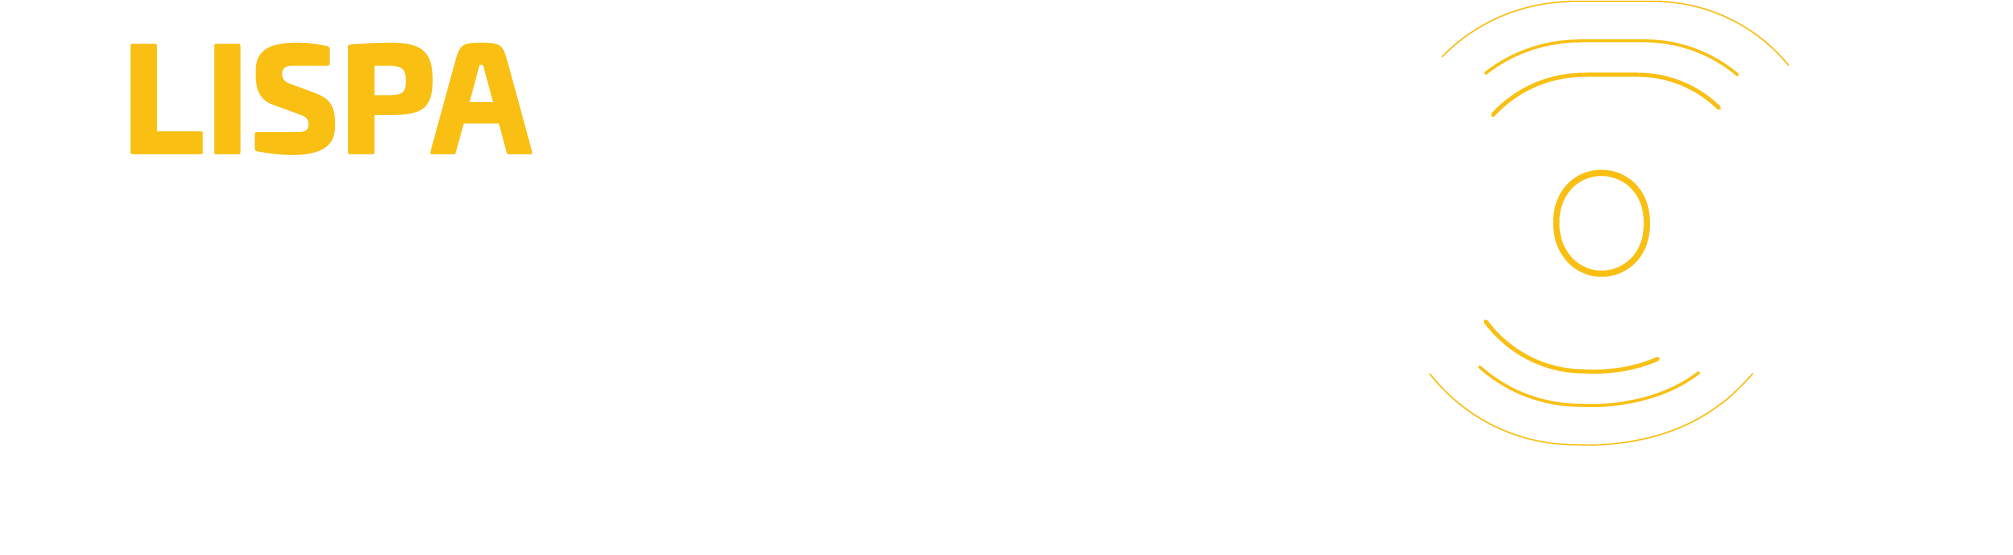 LISPA Jumpstart logotipo v2